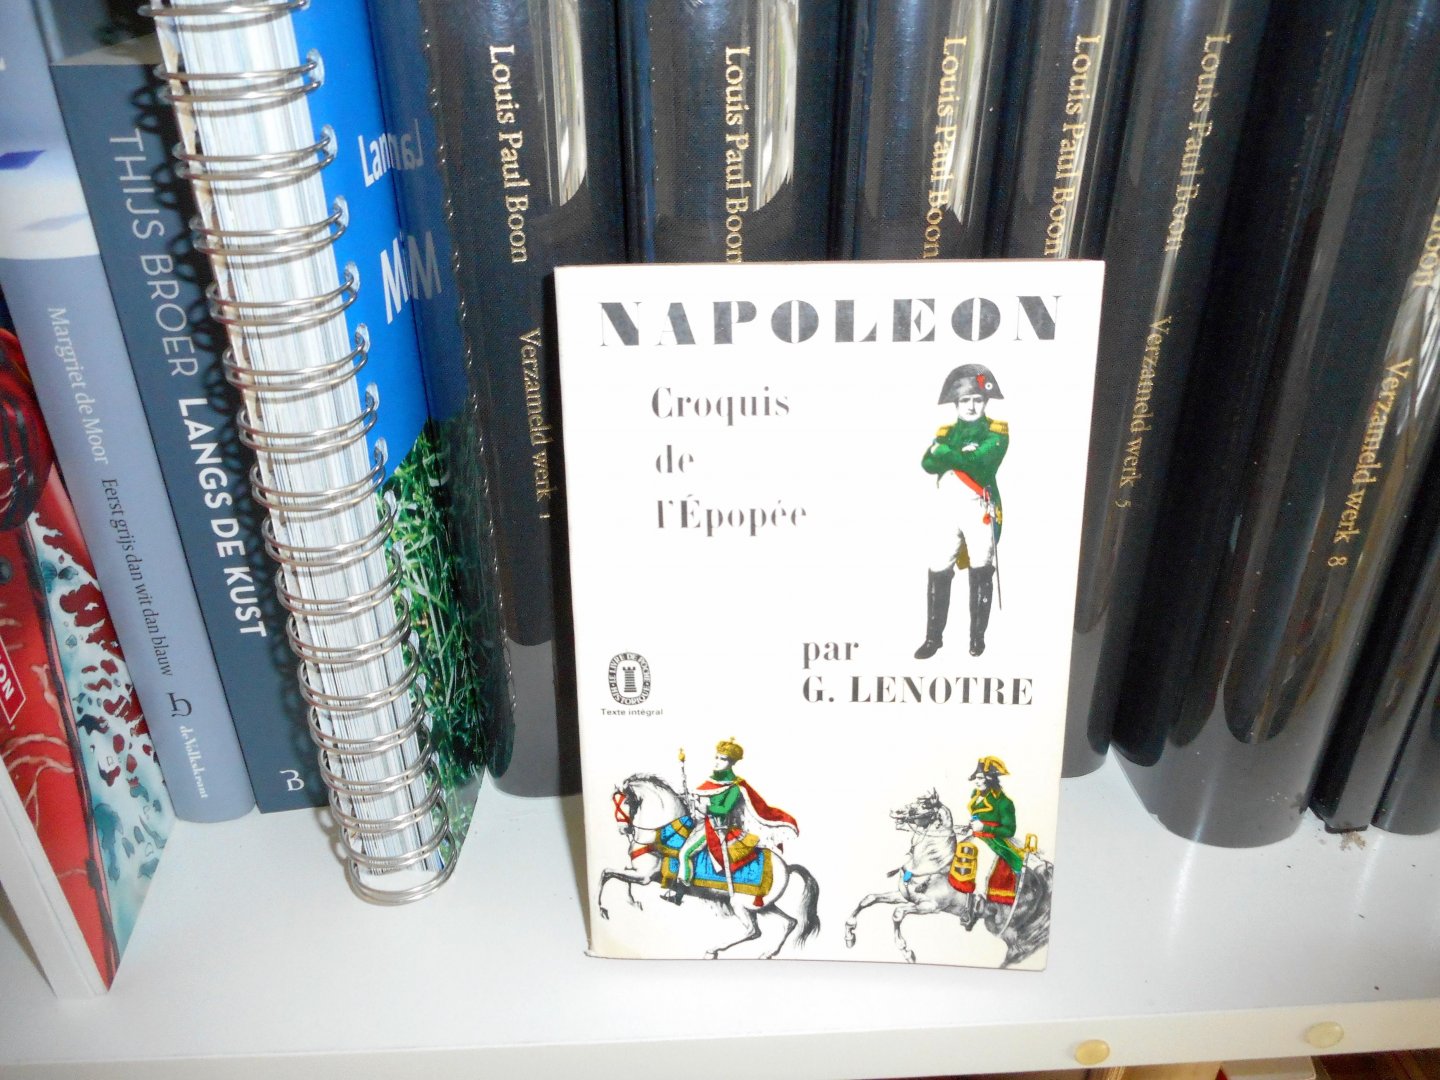 LENOTRE, G. - NAPOLÉON. CROQUIS DE L'ÉPOPÉE